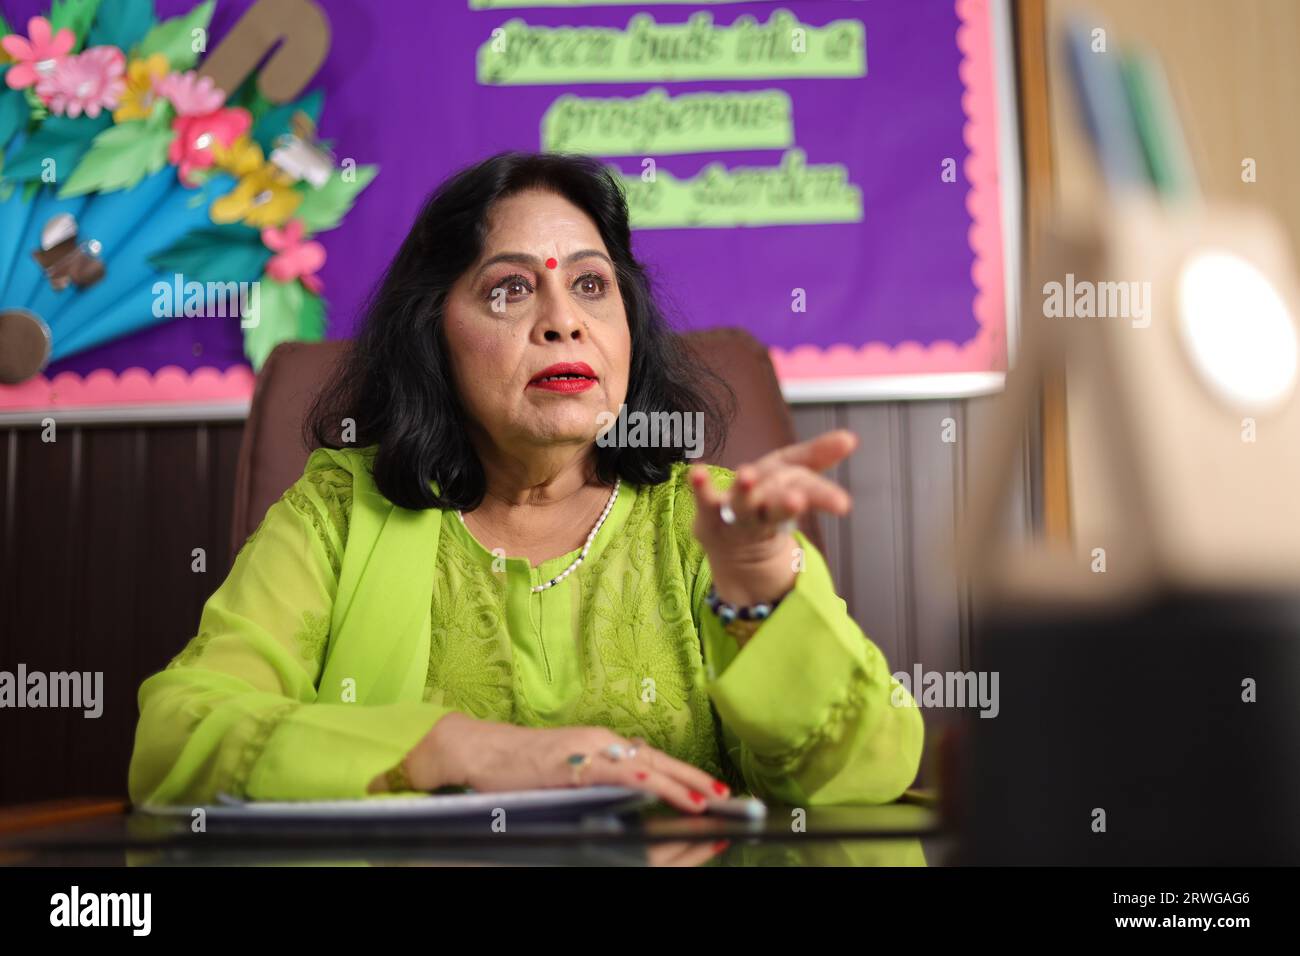 Directrice d'école assise dans son bureau avec agressivité, fuyant avec colère, expression furieuse. Banque D'Images